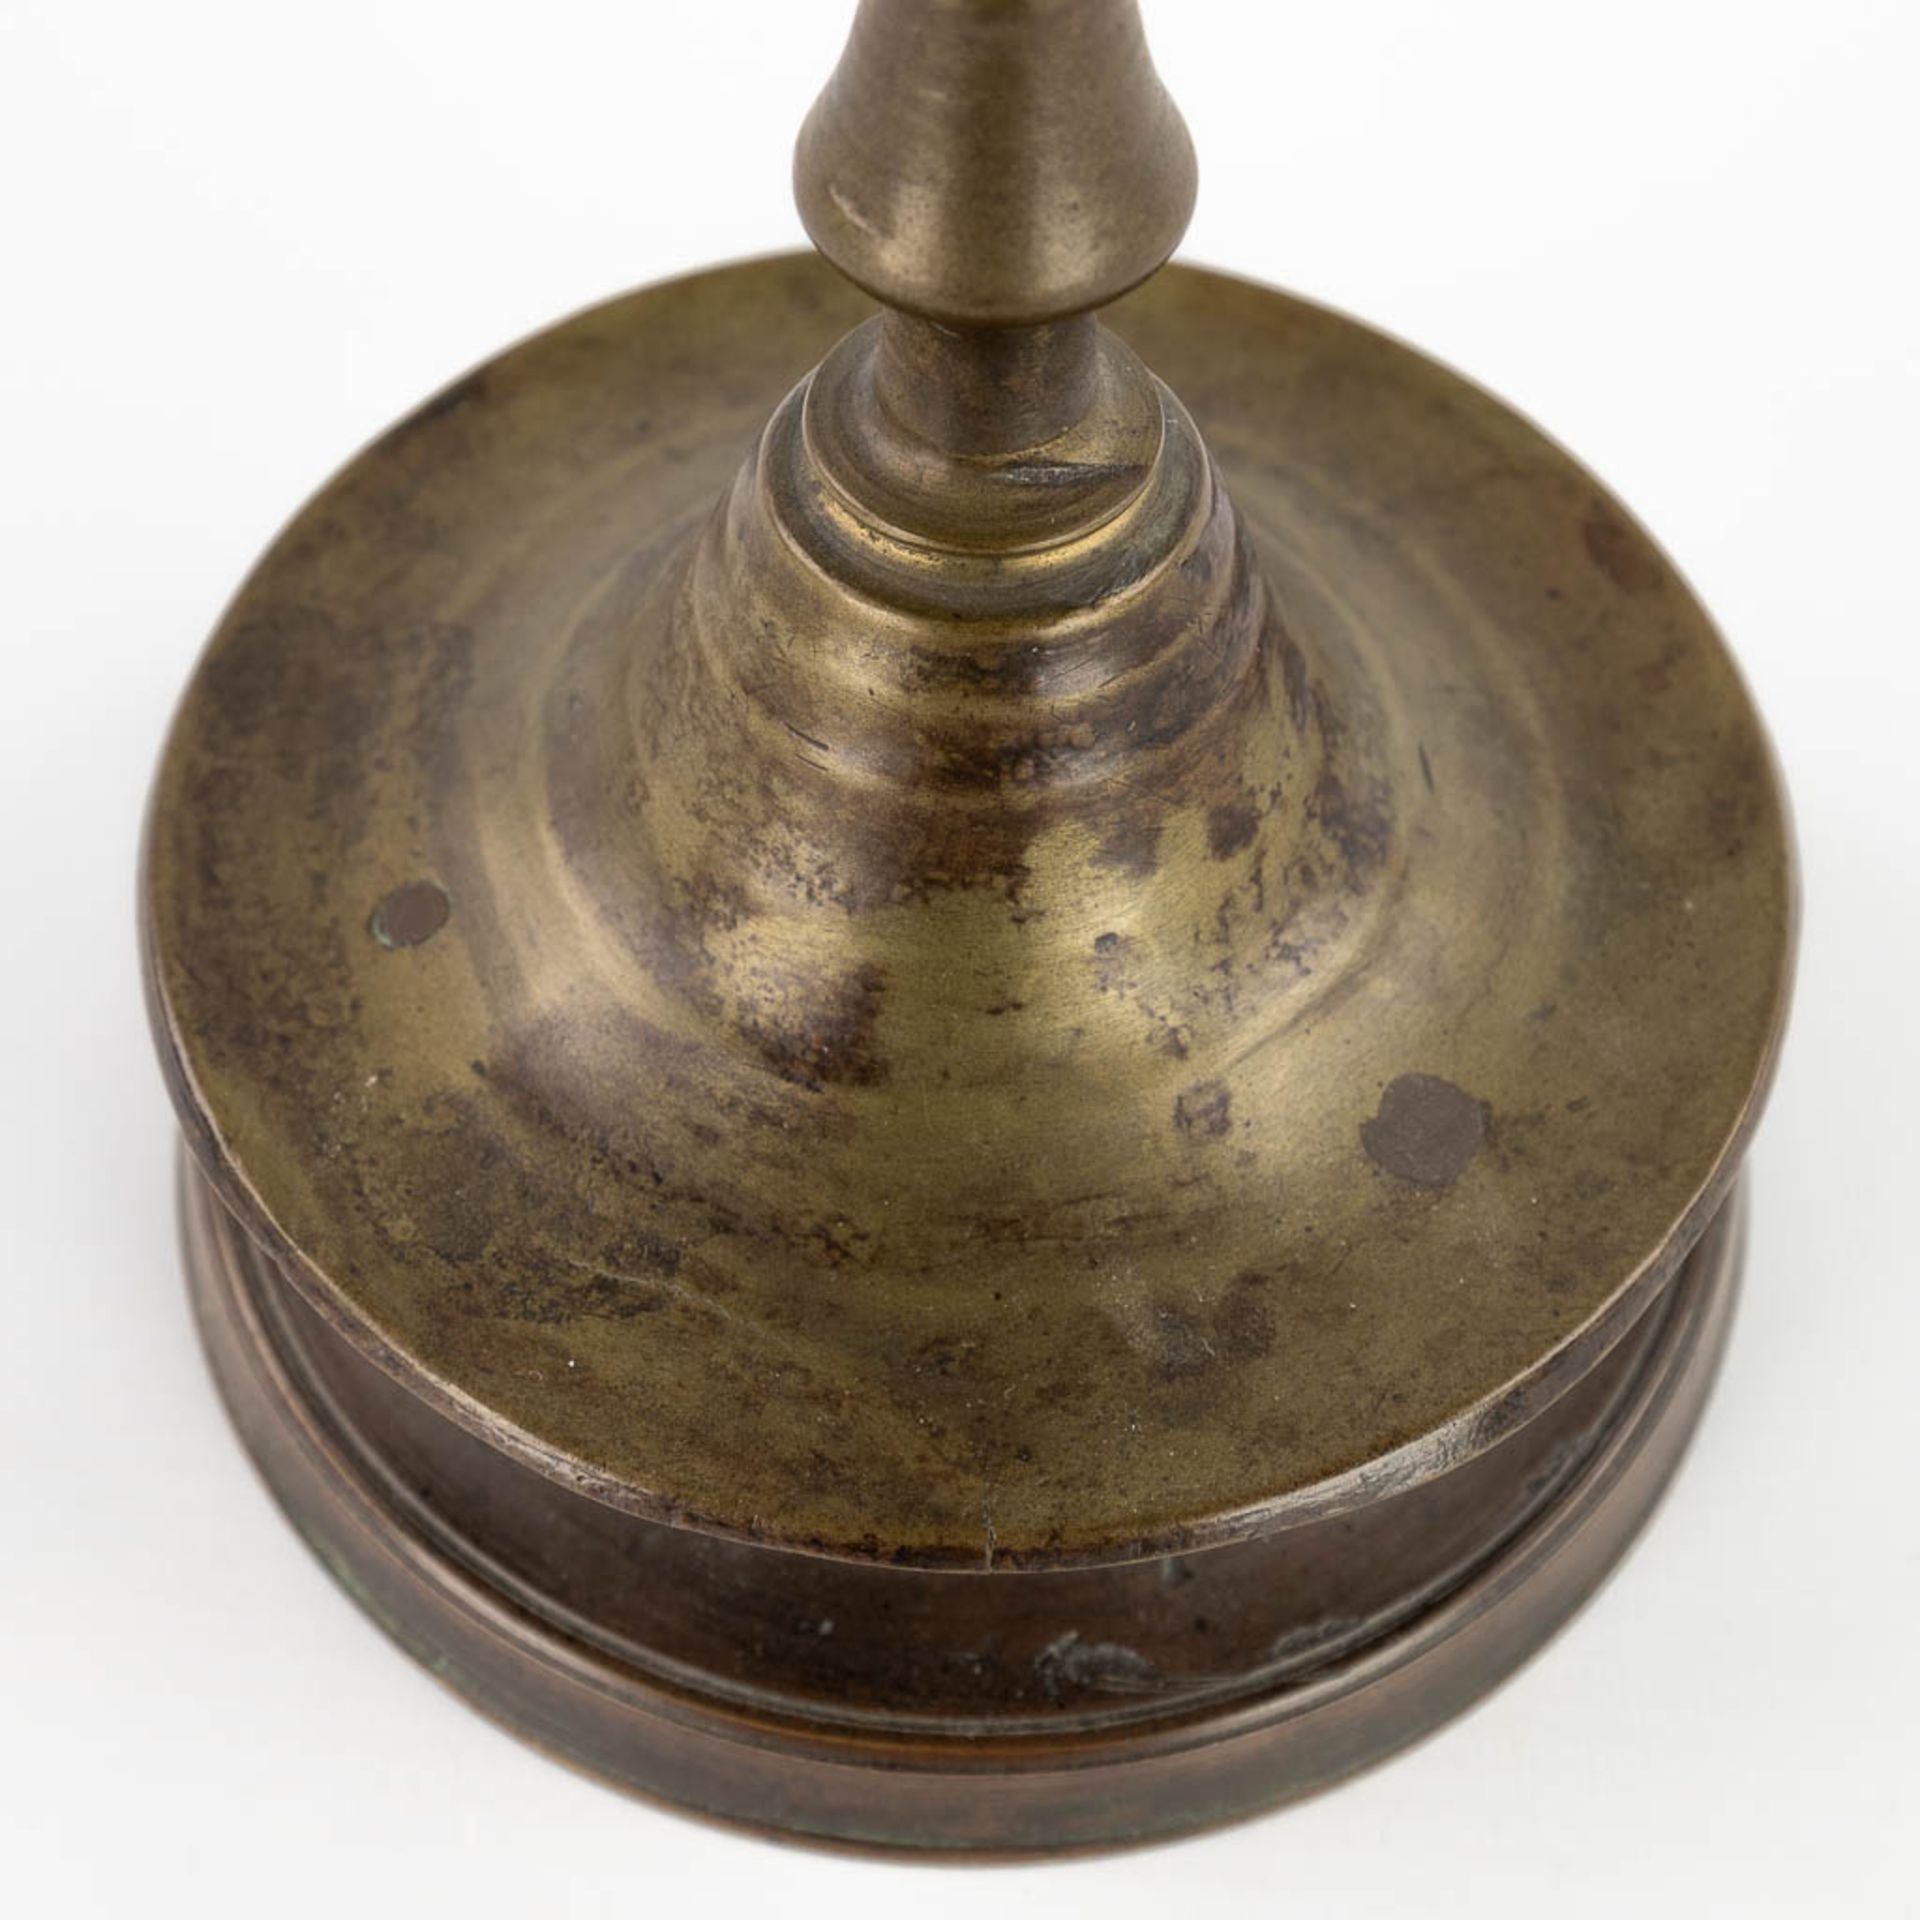 An antique Flemish or Dutch Button candlestick, bronze, 17th C (H:25 x D:13,3 cm) - Image 9 of 9